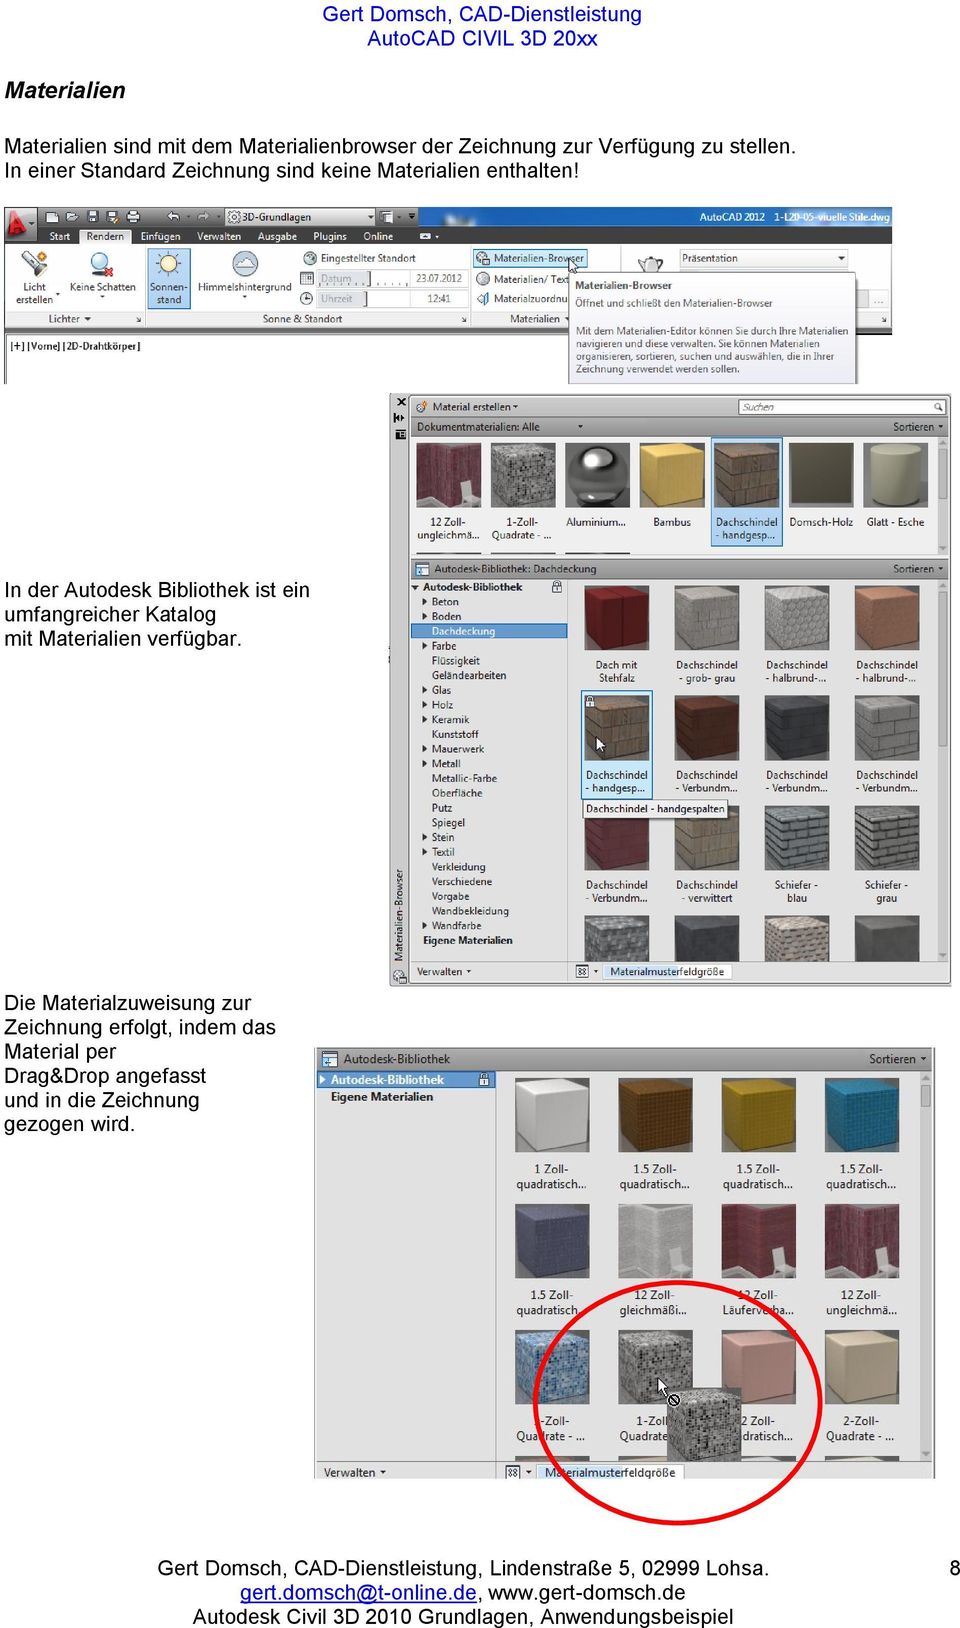 In der Autodesk Bibliothek ist ein umfangreicher Katalog mit Materialien verfügbar.